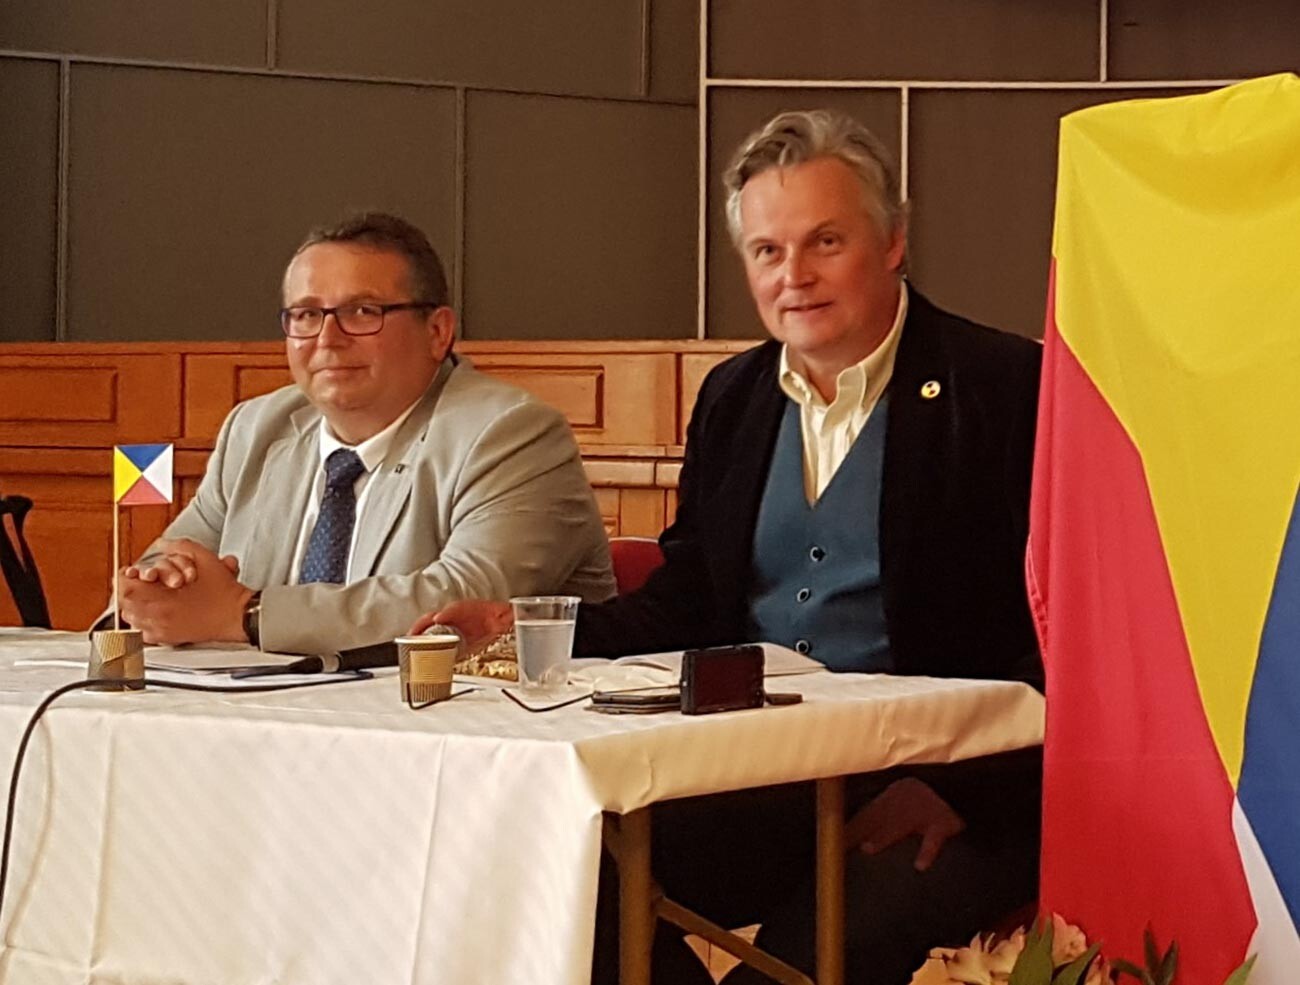 Vojtěch Merunka et Jan van Steenbergen lors de la deuxième conférence de l'interslave, en 2018